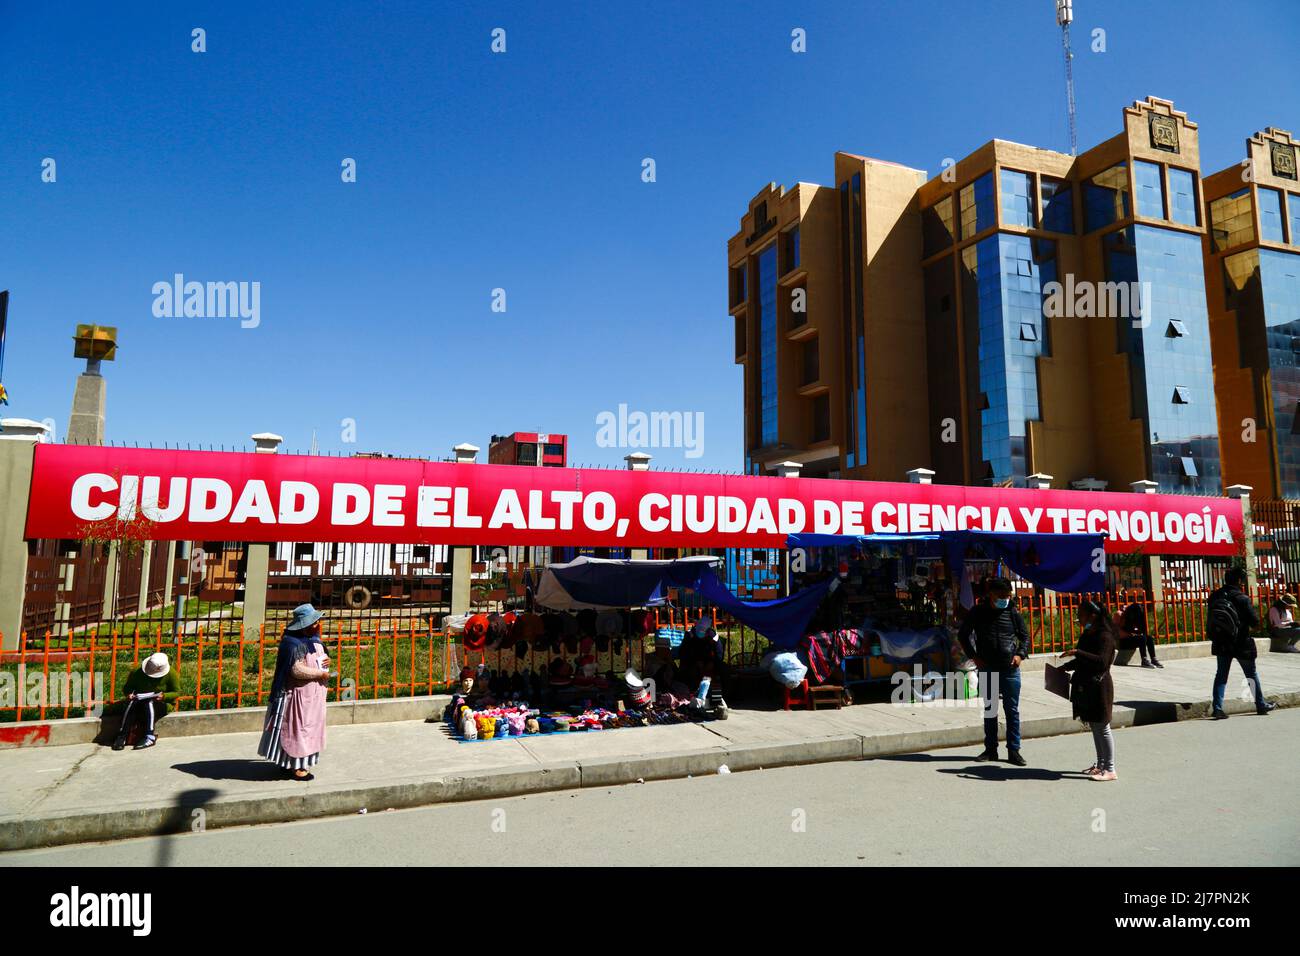 Bannière « ville d'El Alto, ville des sciences et de la technologie » à l'extérieur du bâtiment principal de l'université UPEA (Universidad Pública de El Alto), El Alto, Bolivie Banque D'Images